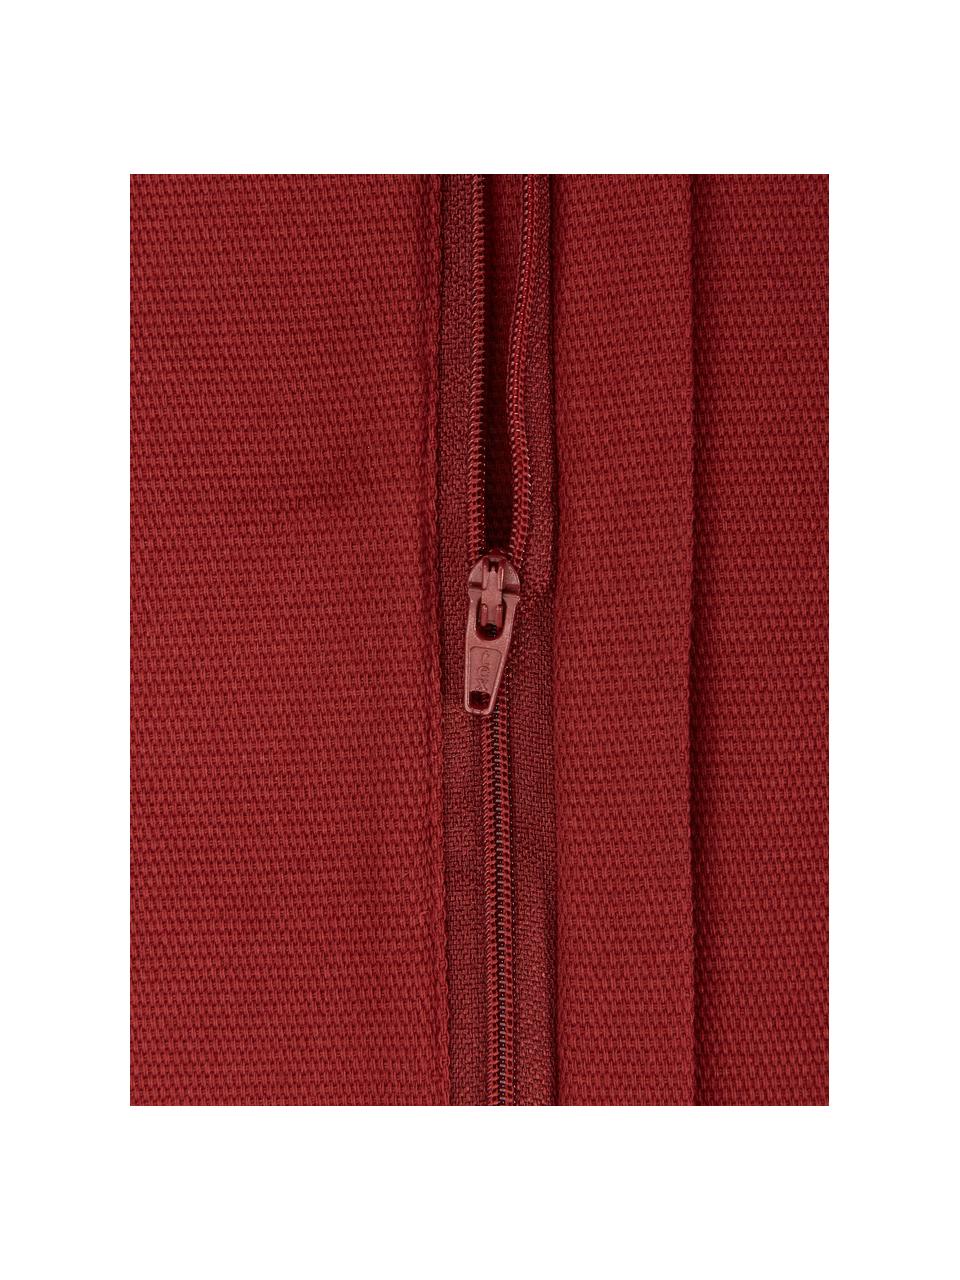 Poszewka na poduszkę z bawełny Mads, 100% bawełna, Czerwony, S 30 x D 50 cm